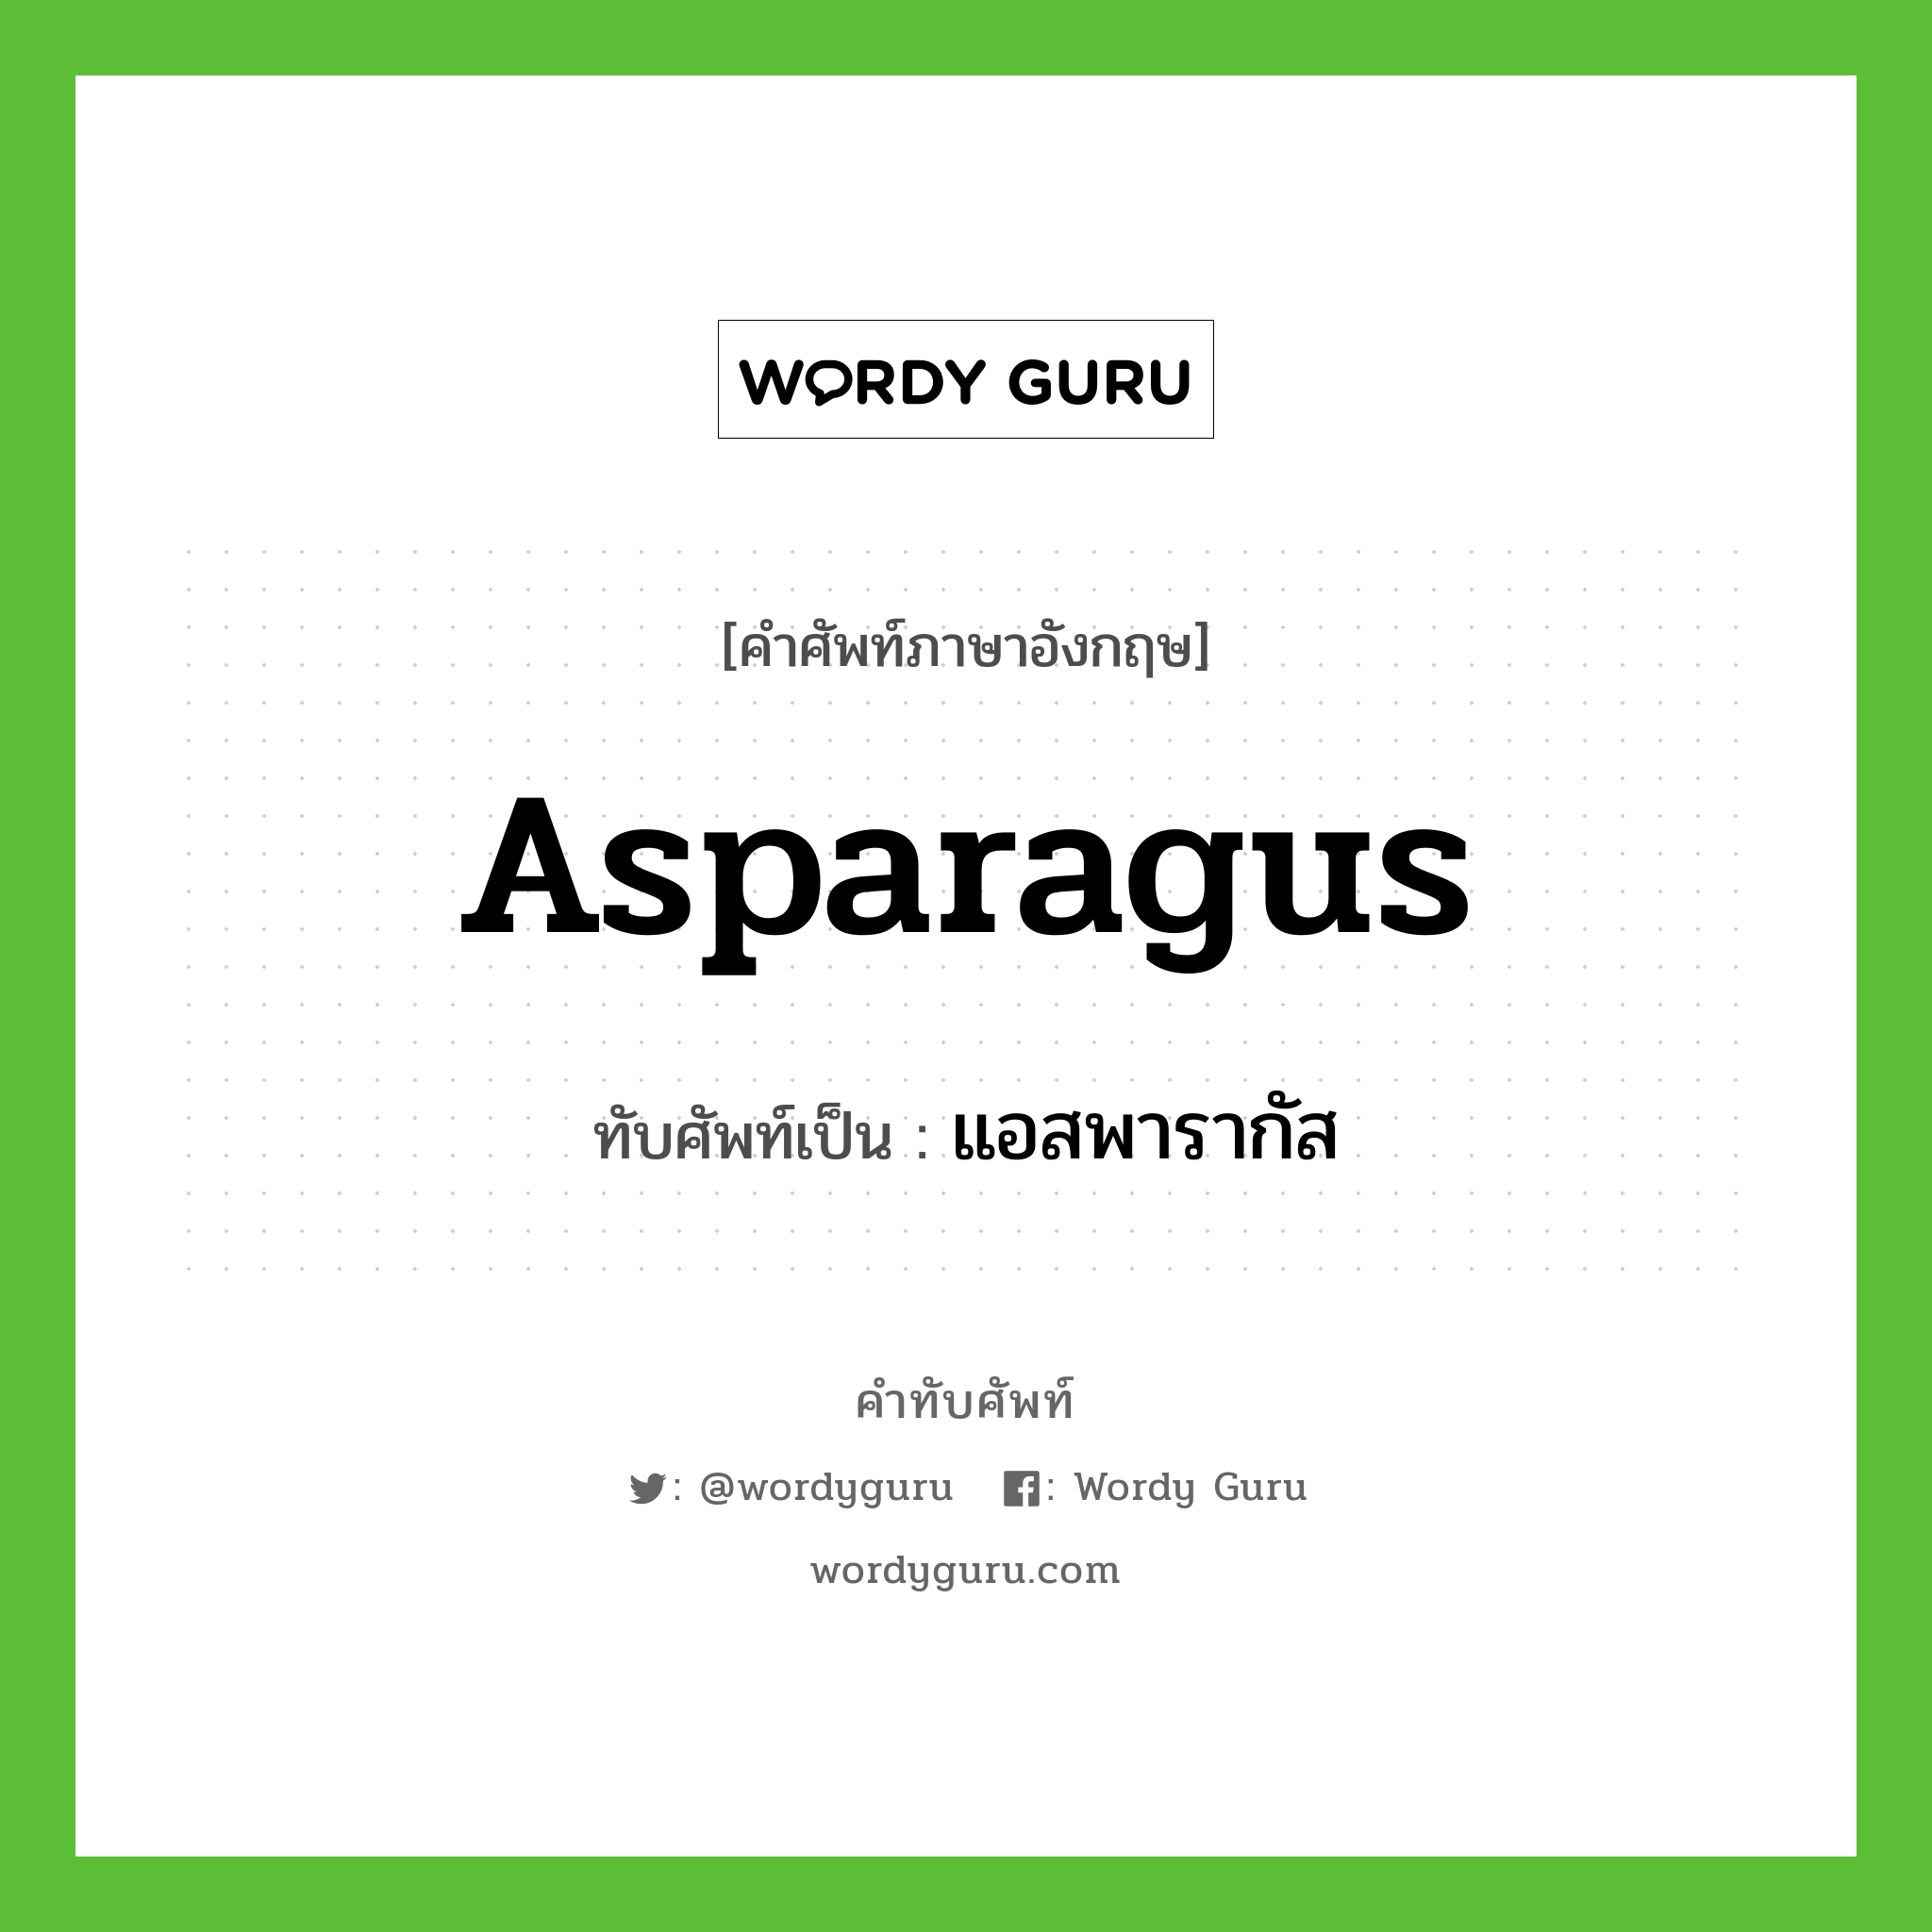 asparagus เขียนเป็นคำไทยว่าอะไร?, คำศัพท์ภาษาอังกฤษ asparagus ทับศัพท์เป็น แอสพารากัส